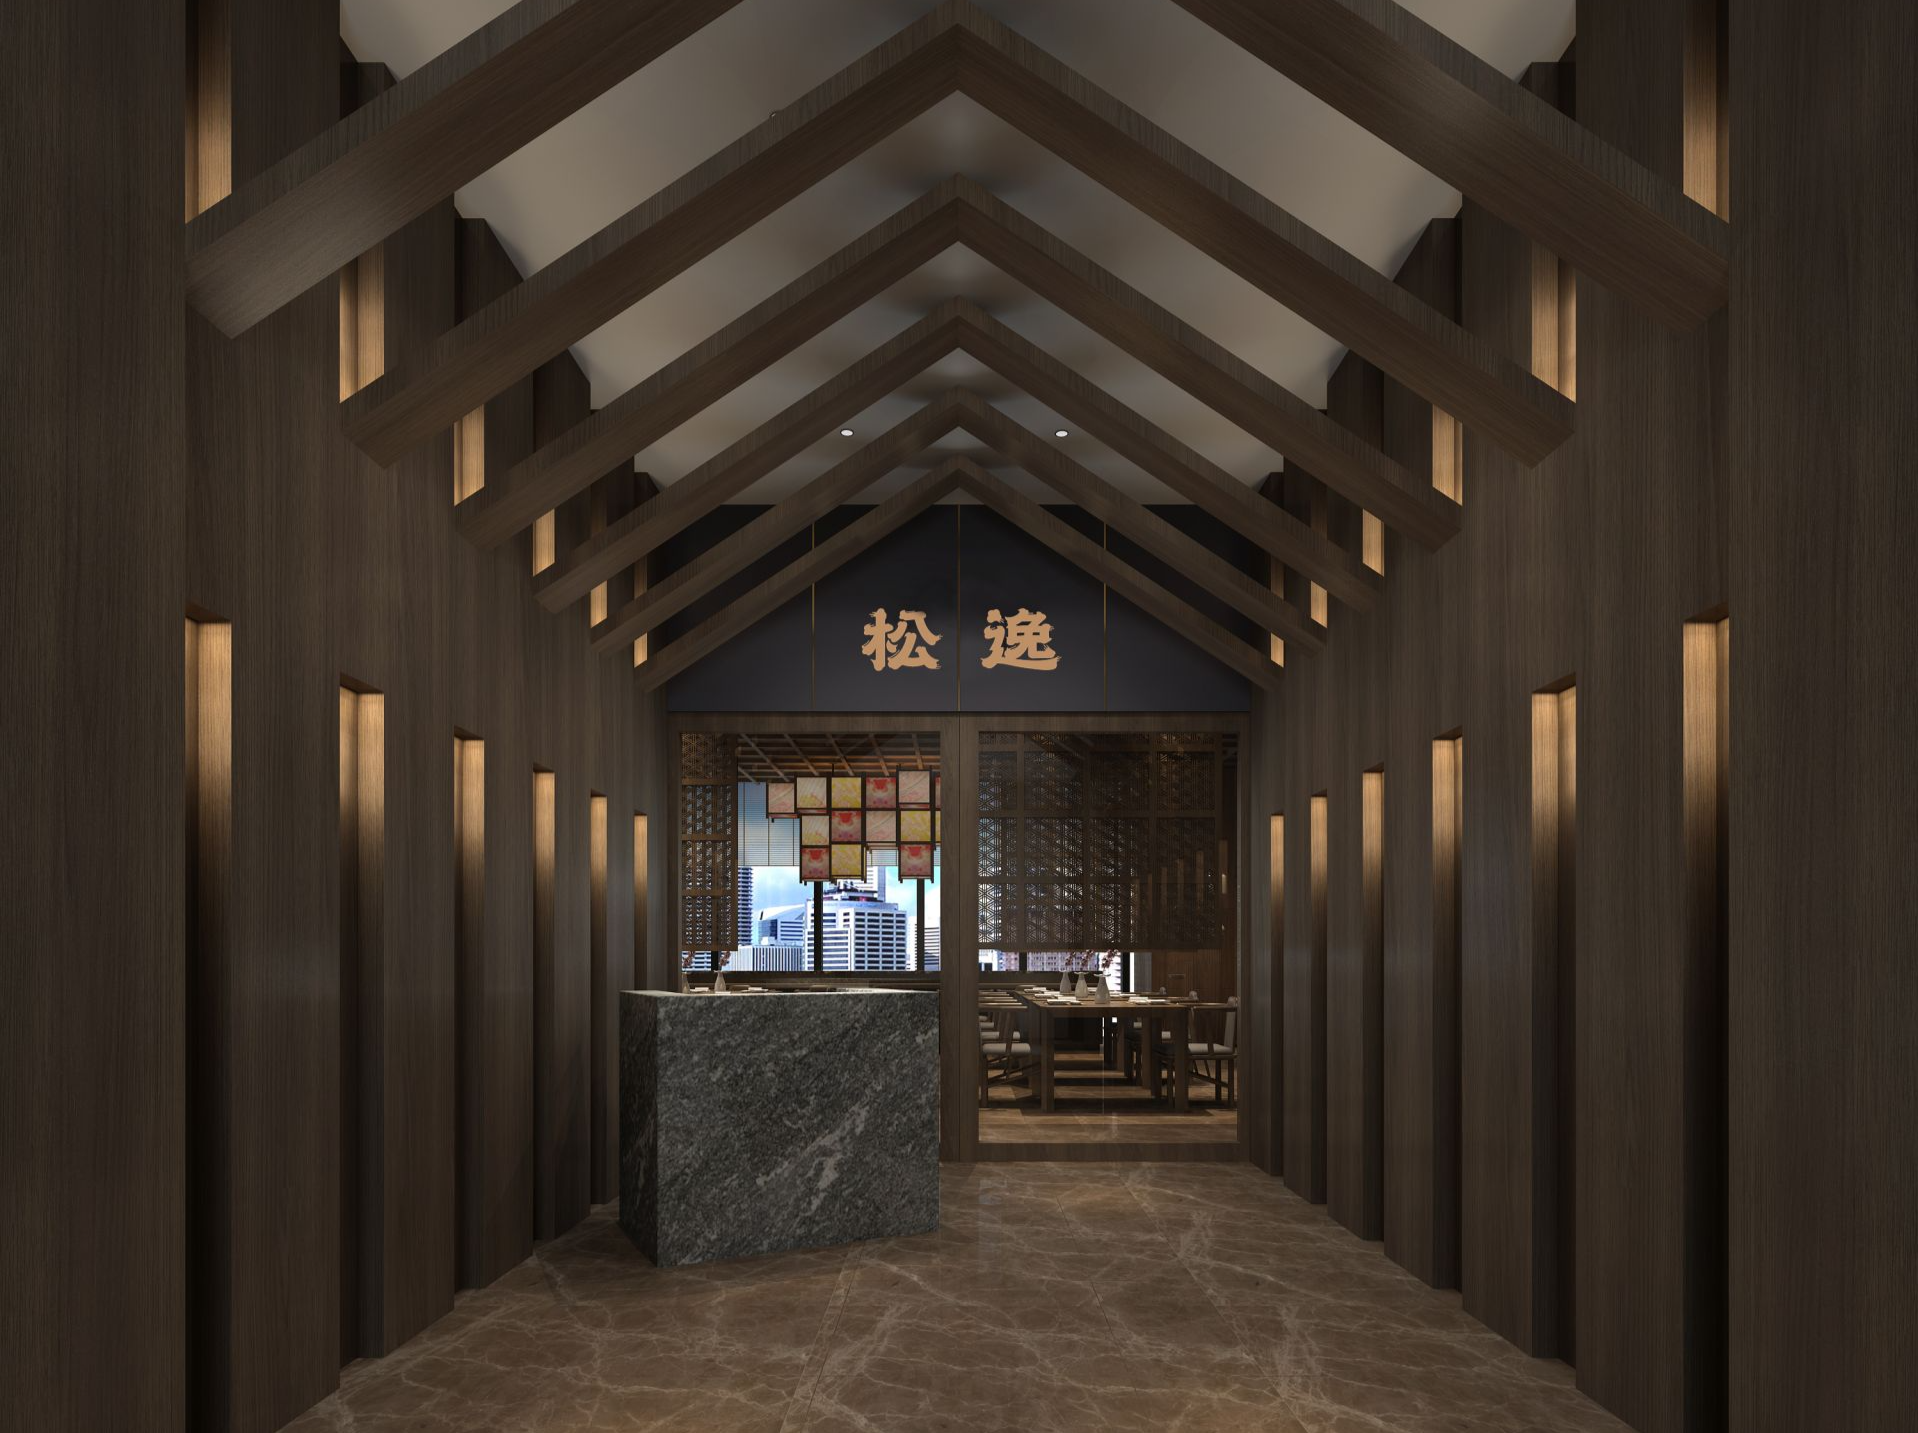 深圳四季酒店全新餐厅“松逸”亮相 汇聚和风食物与设计之美